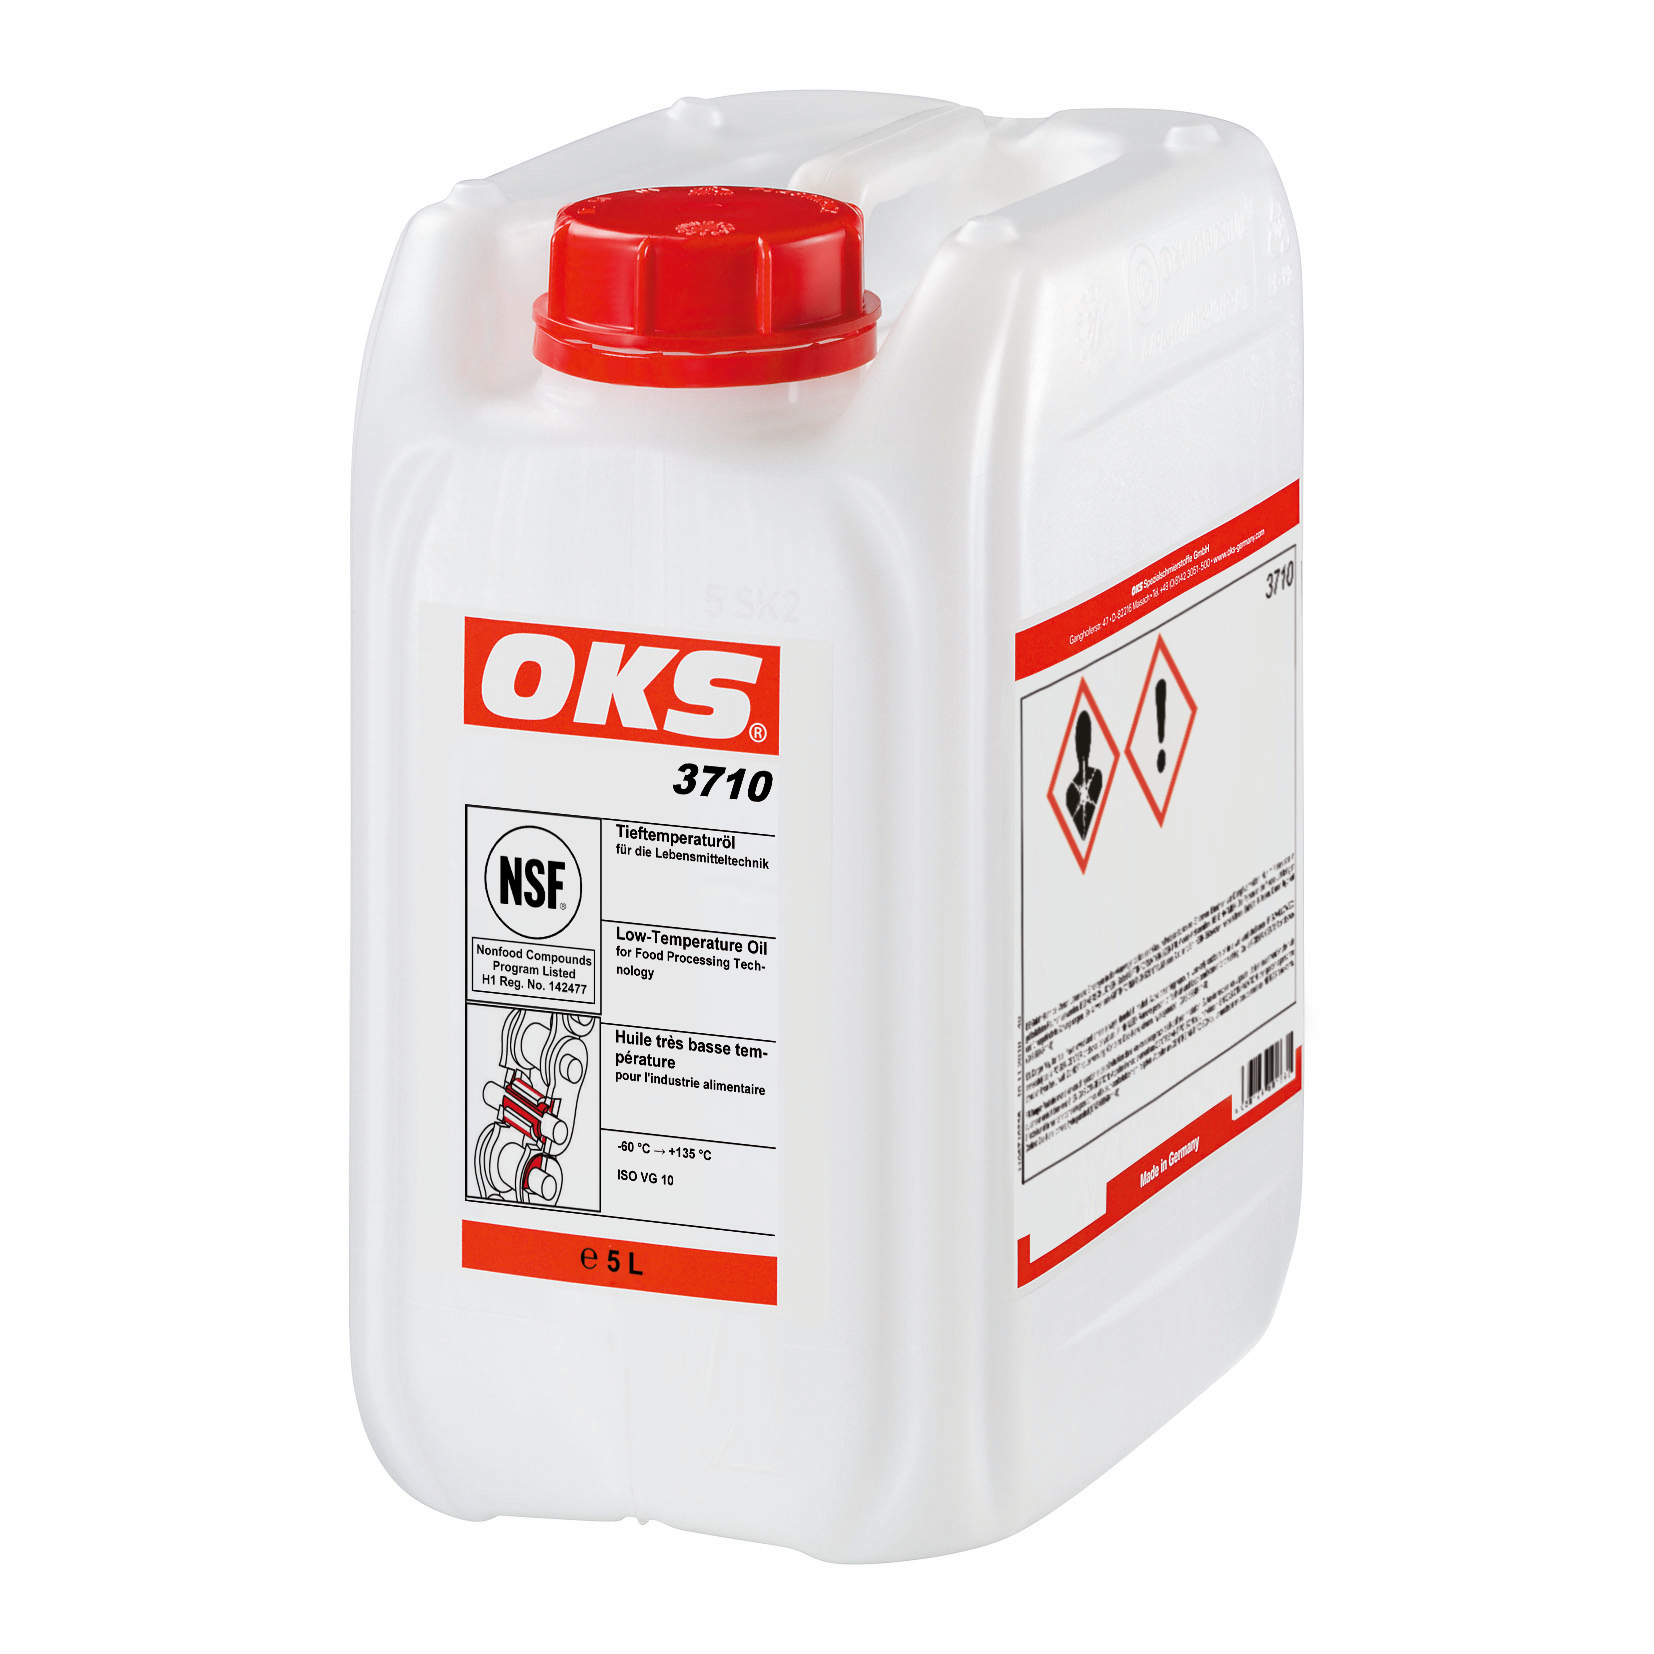 OKS 3710 Food-Grade Olie voor Lage Temperaturen, 5 lt